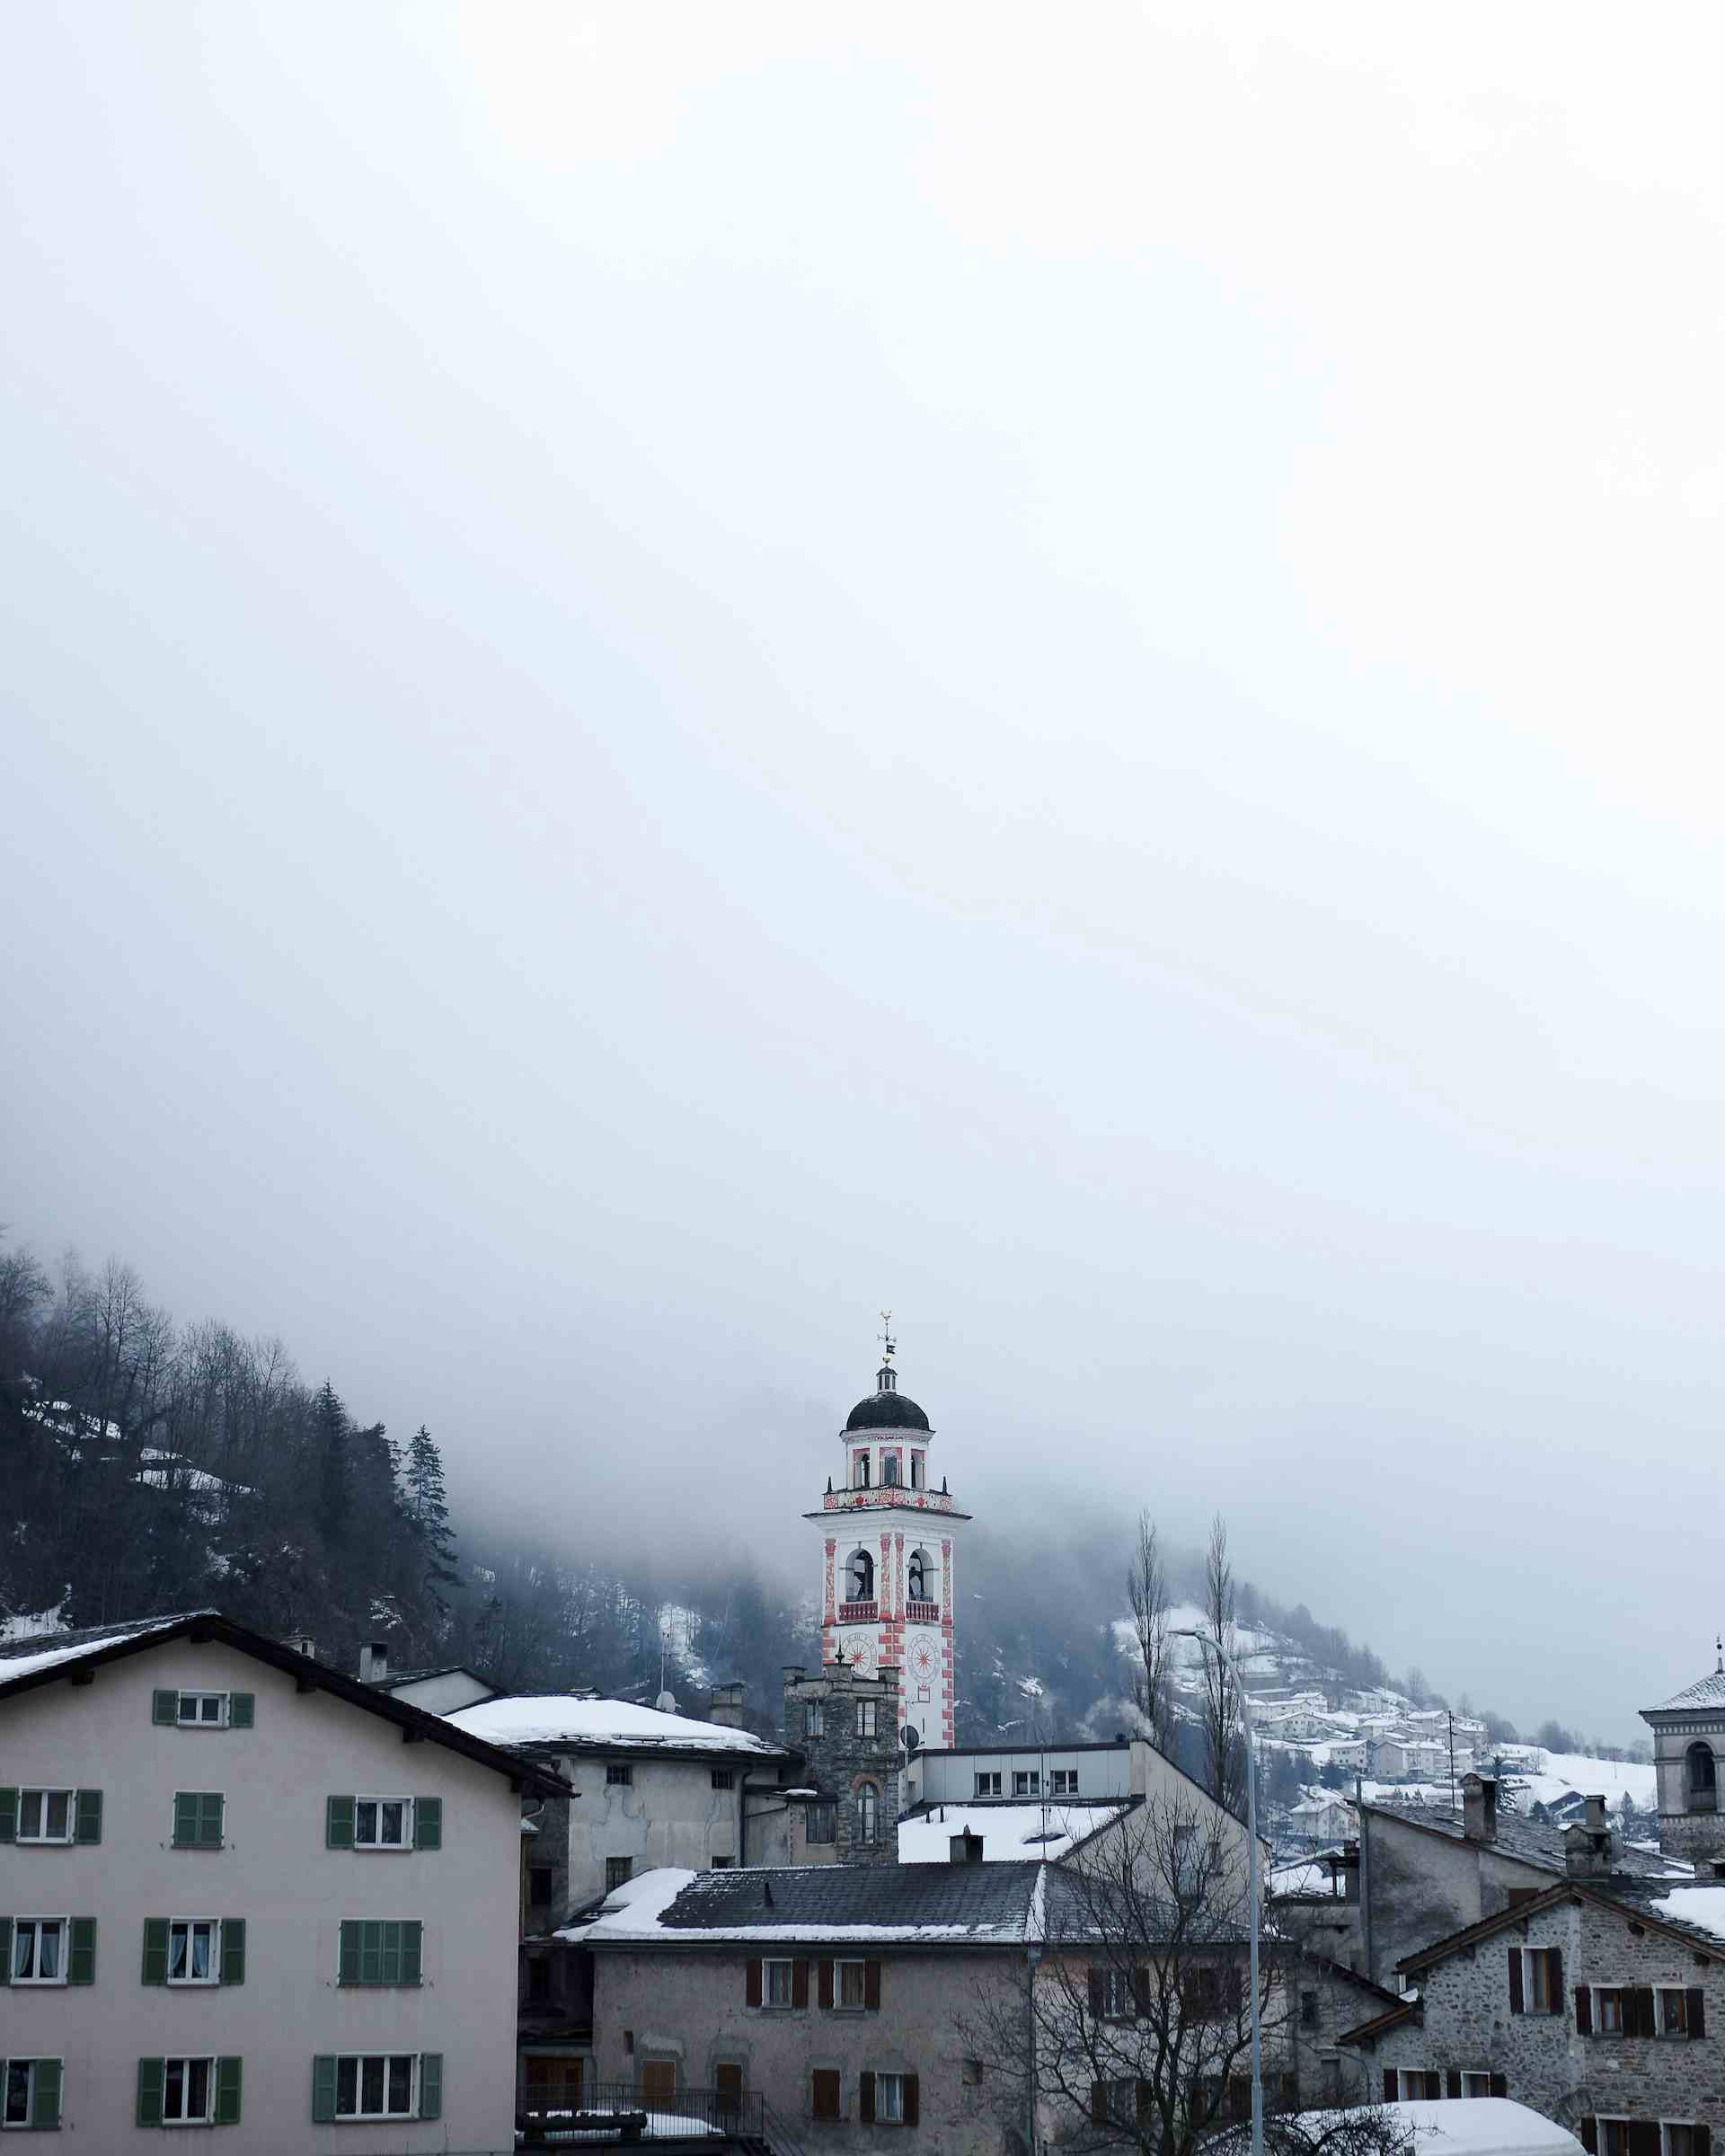 Zur Zufriedenheit, Produzent in Tamins Kanton Graubünden in der Schweiz